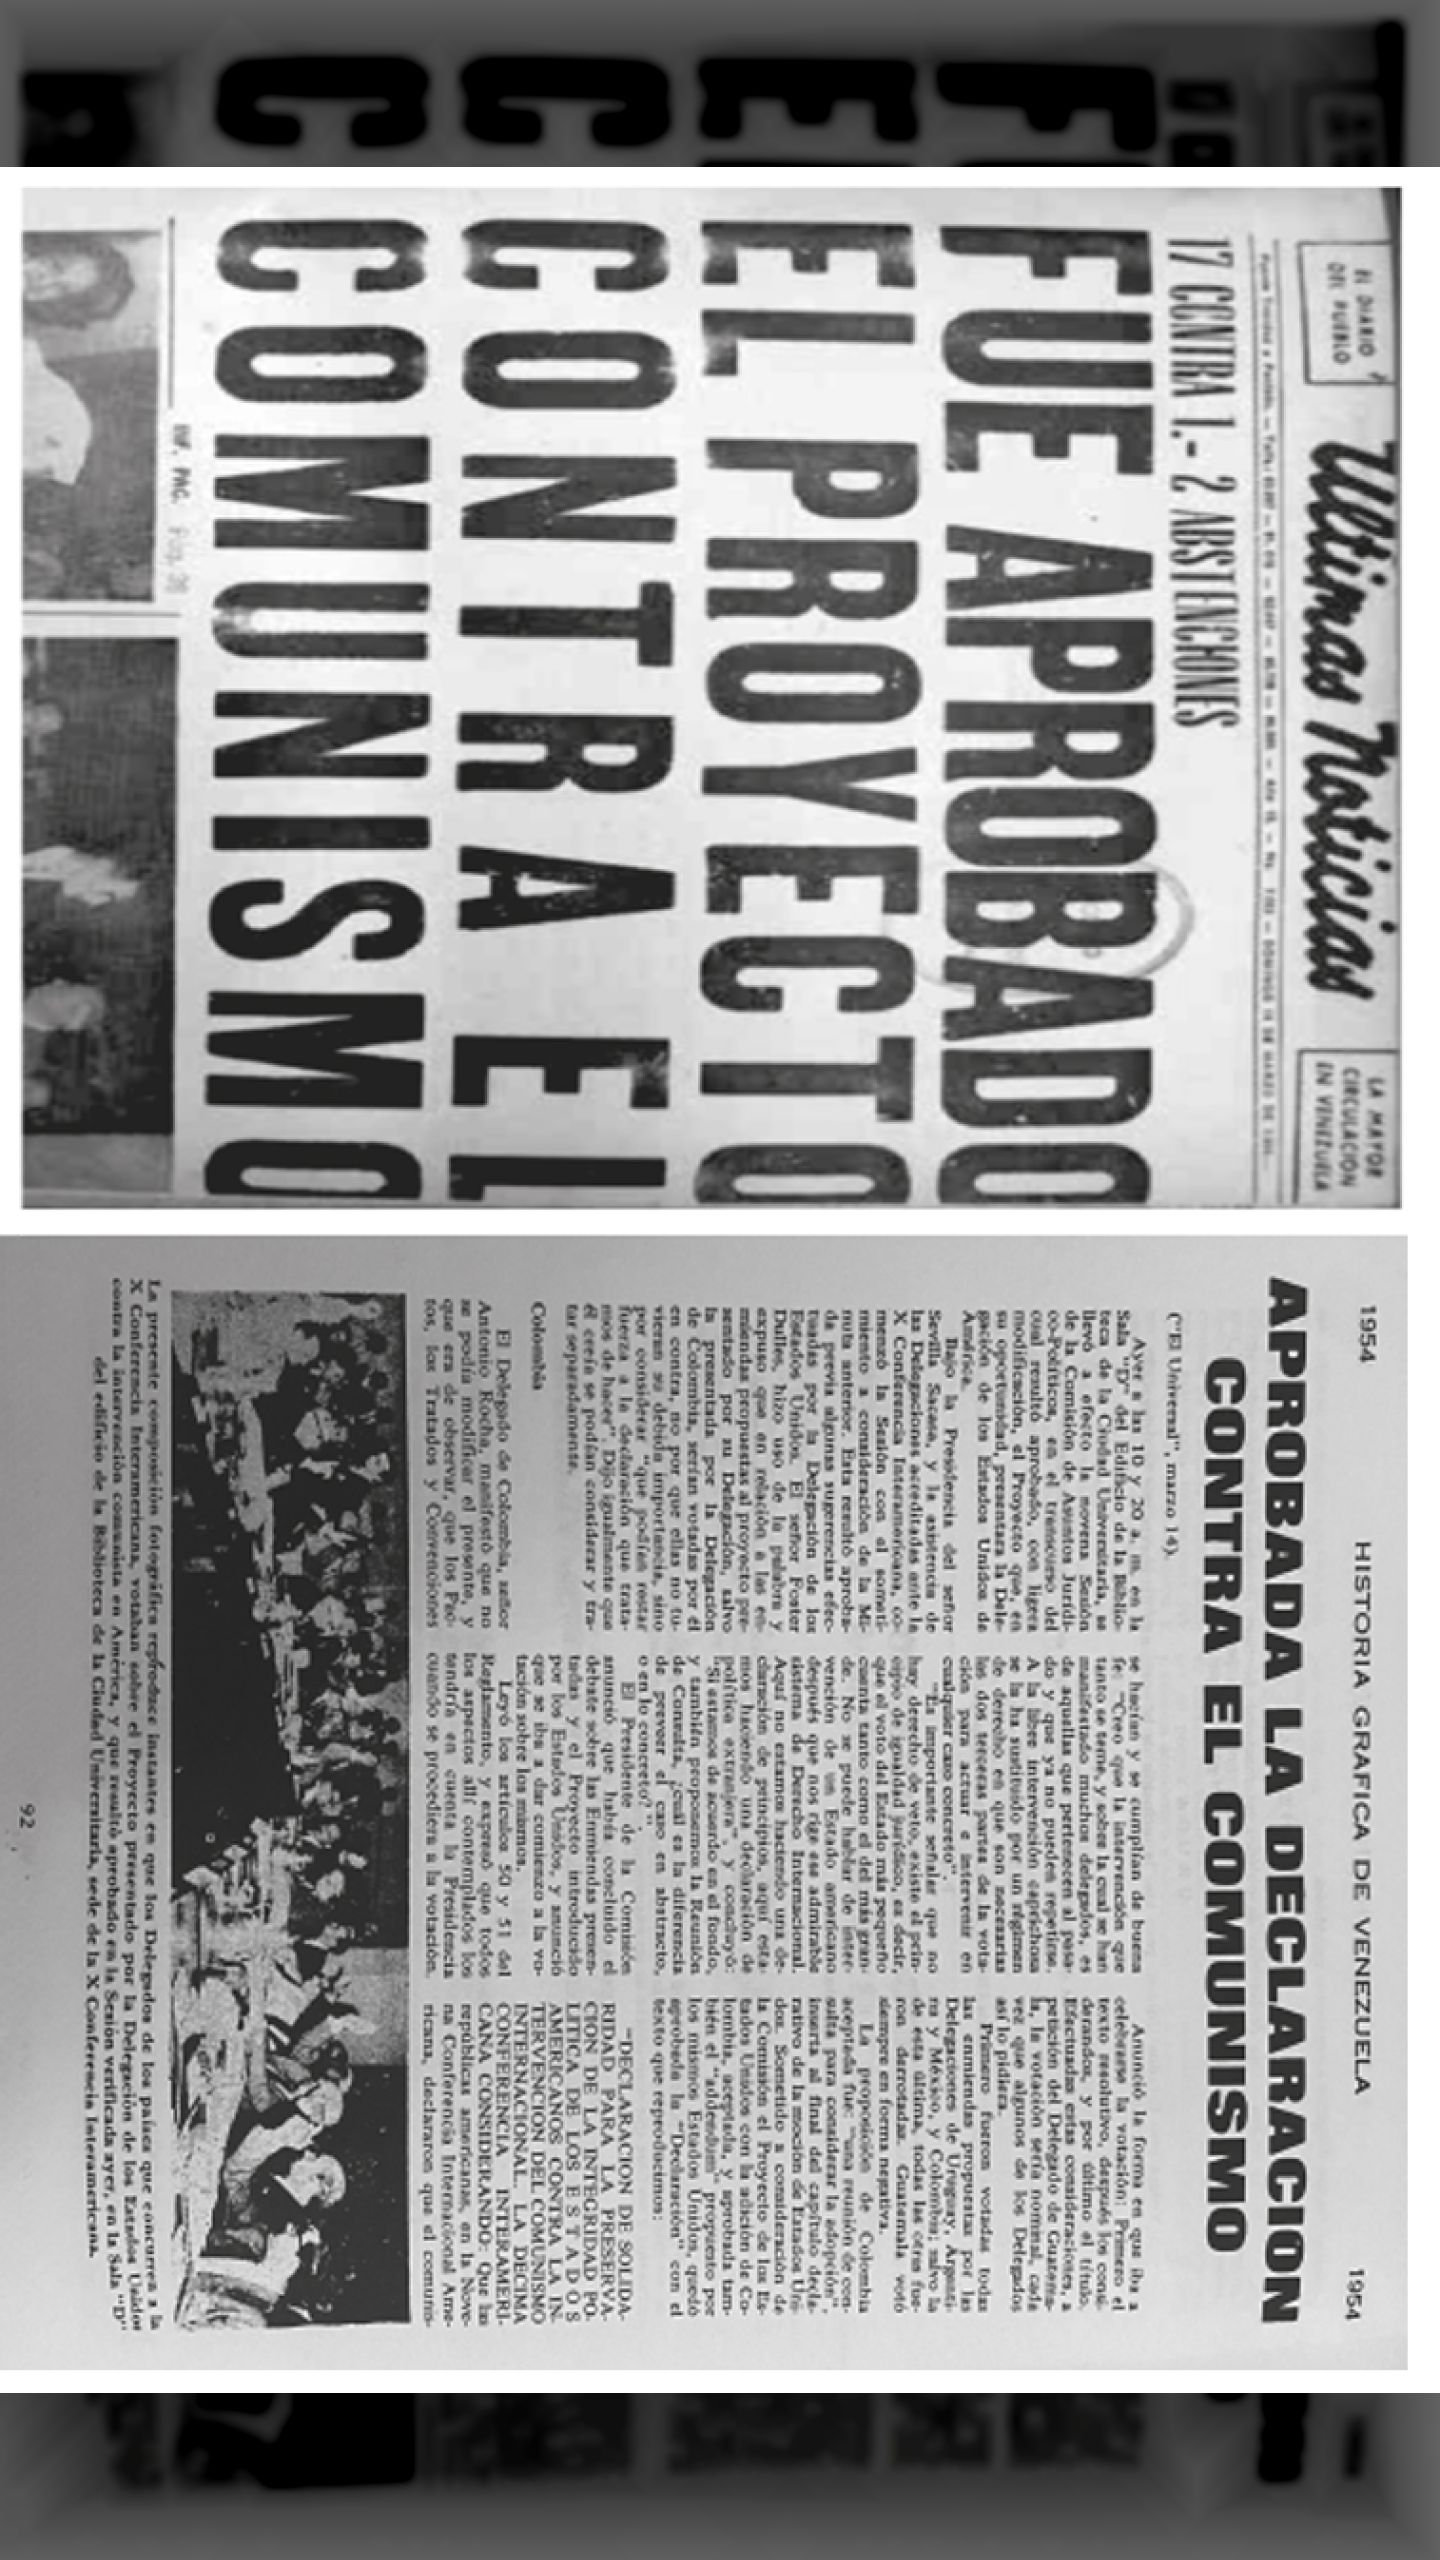 FUE APROBADO PROYECTO CONTRA EL COMUNISMO (Últimas Noticias, 14 de marzo 1954)